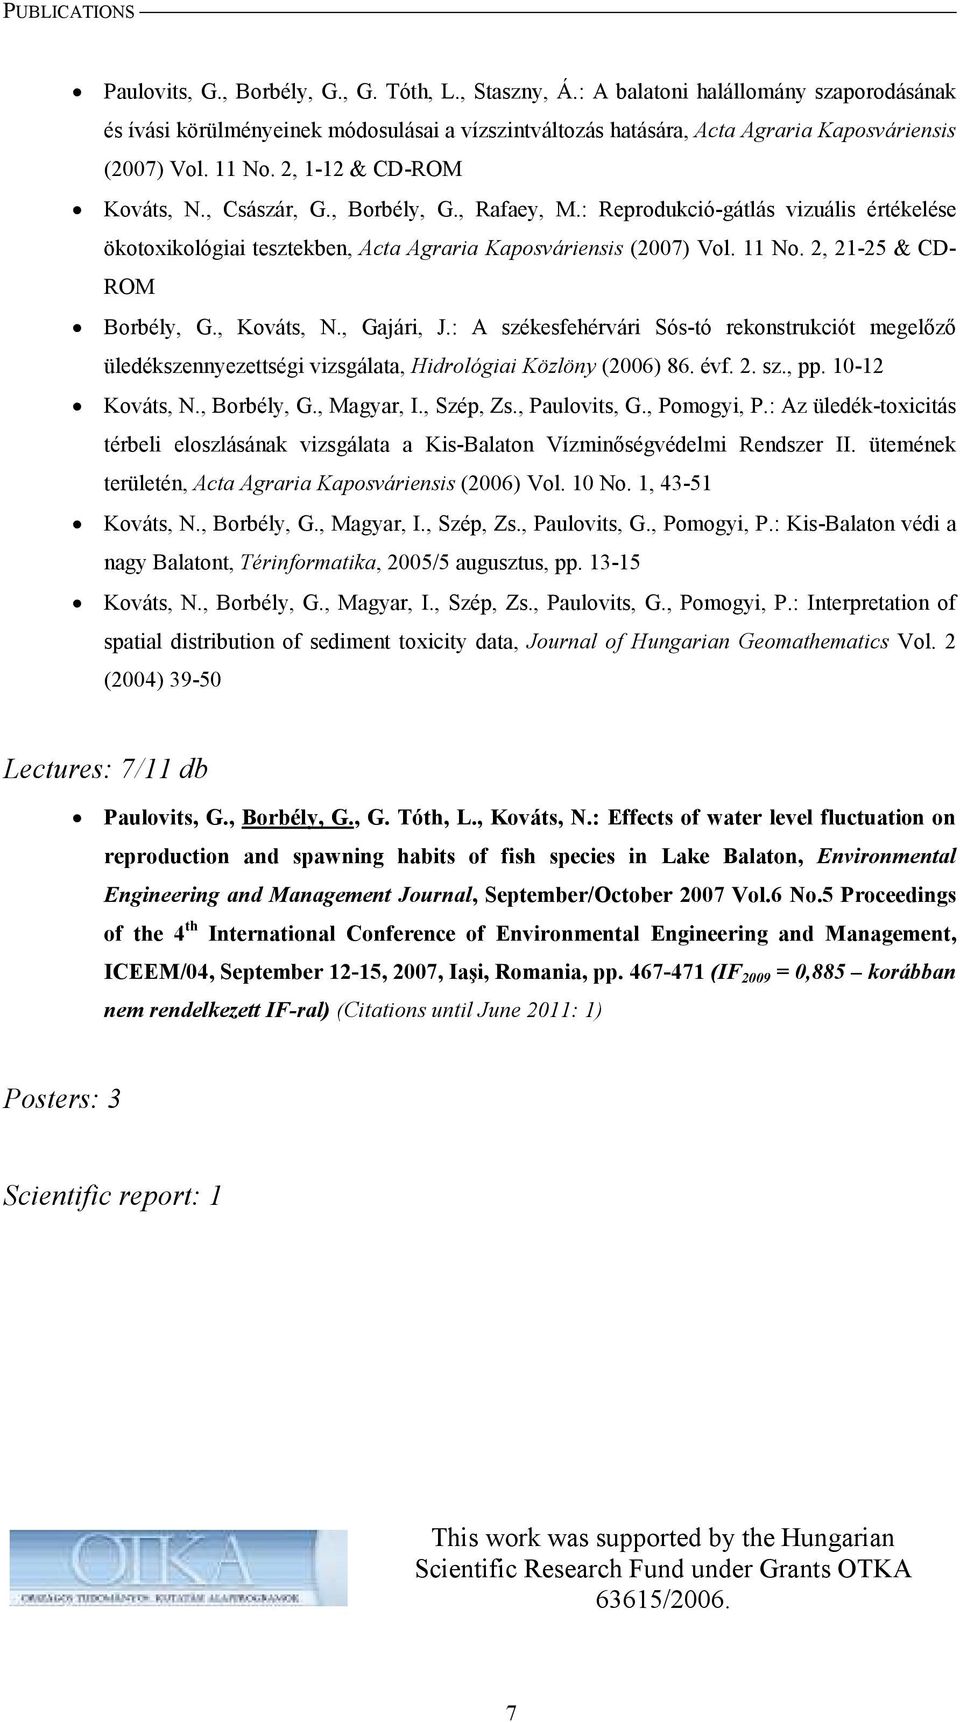 , Borbély, G., Rafaey, M.: Reprodukció-gátlás vizuális értékelése ökotoxikológiai tesztekben, Acta Agraria Kaposváriensis (2007) Vol. 11 No. 2, 21-25 & CD- ROM Borbély, G., Kováts, N., Gajári, J.